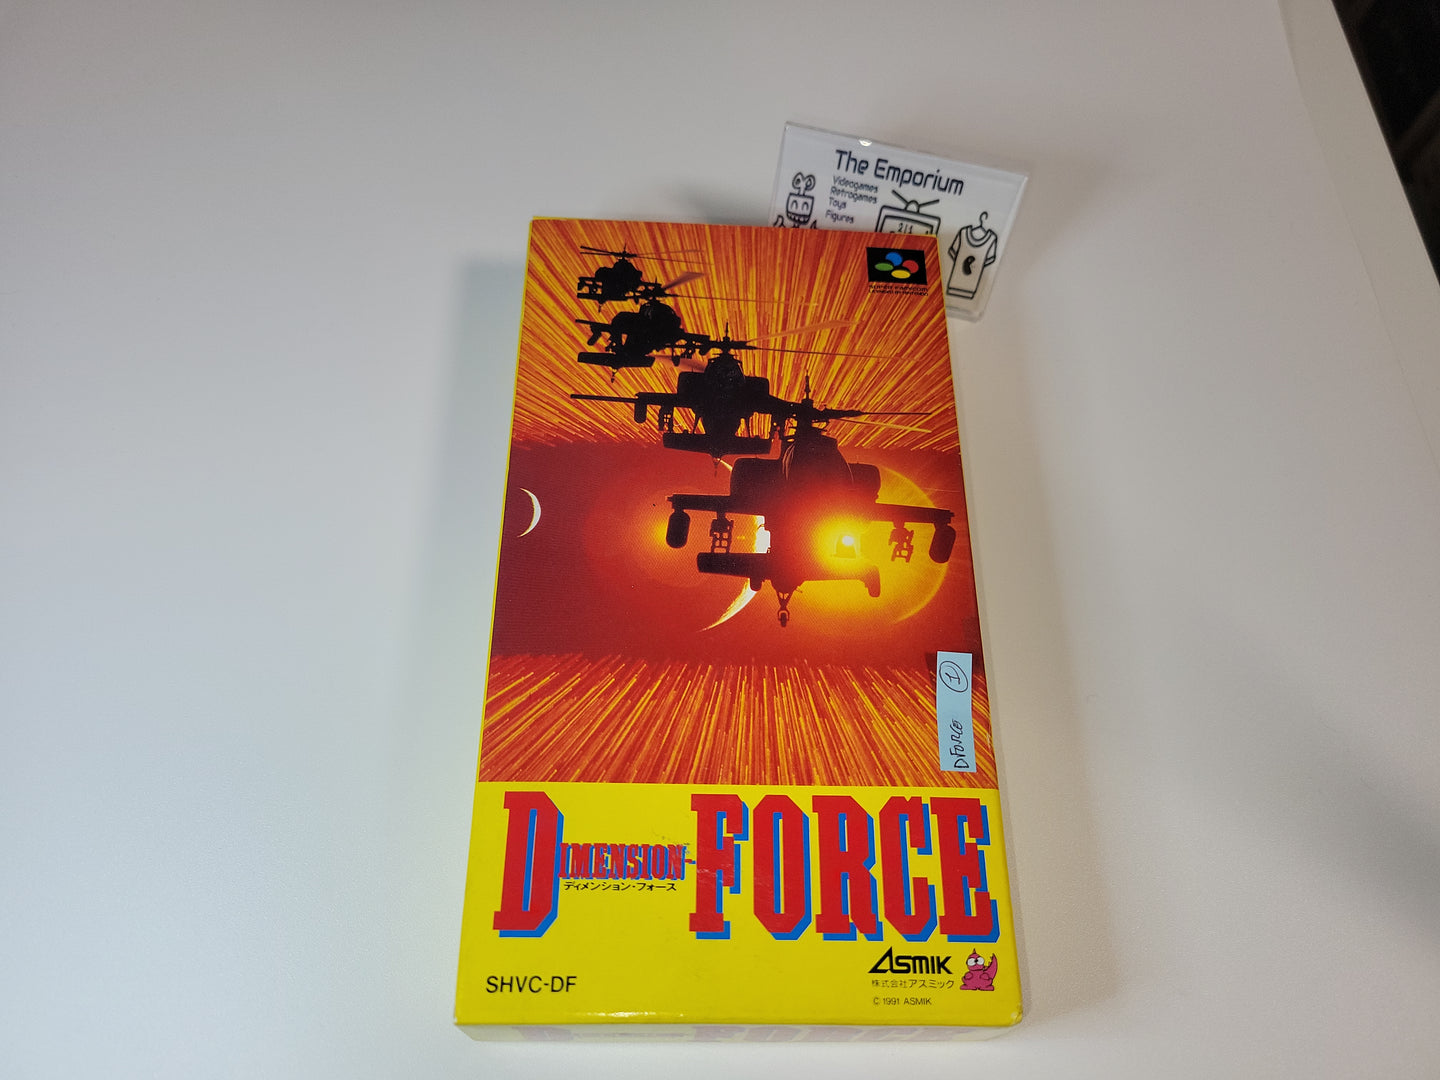 D-Force / Dimension Force - Nintendo Sfc Super Famicom